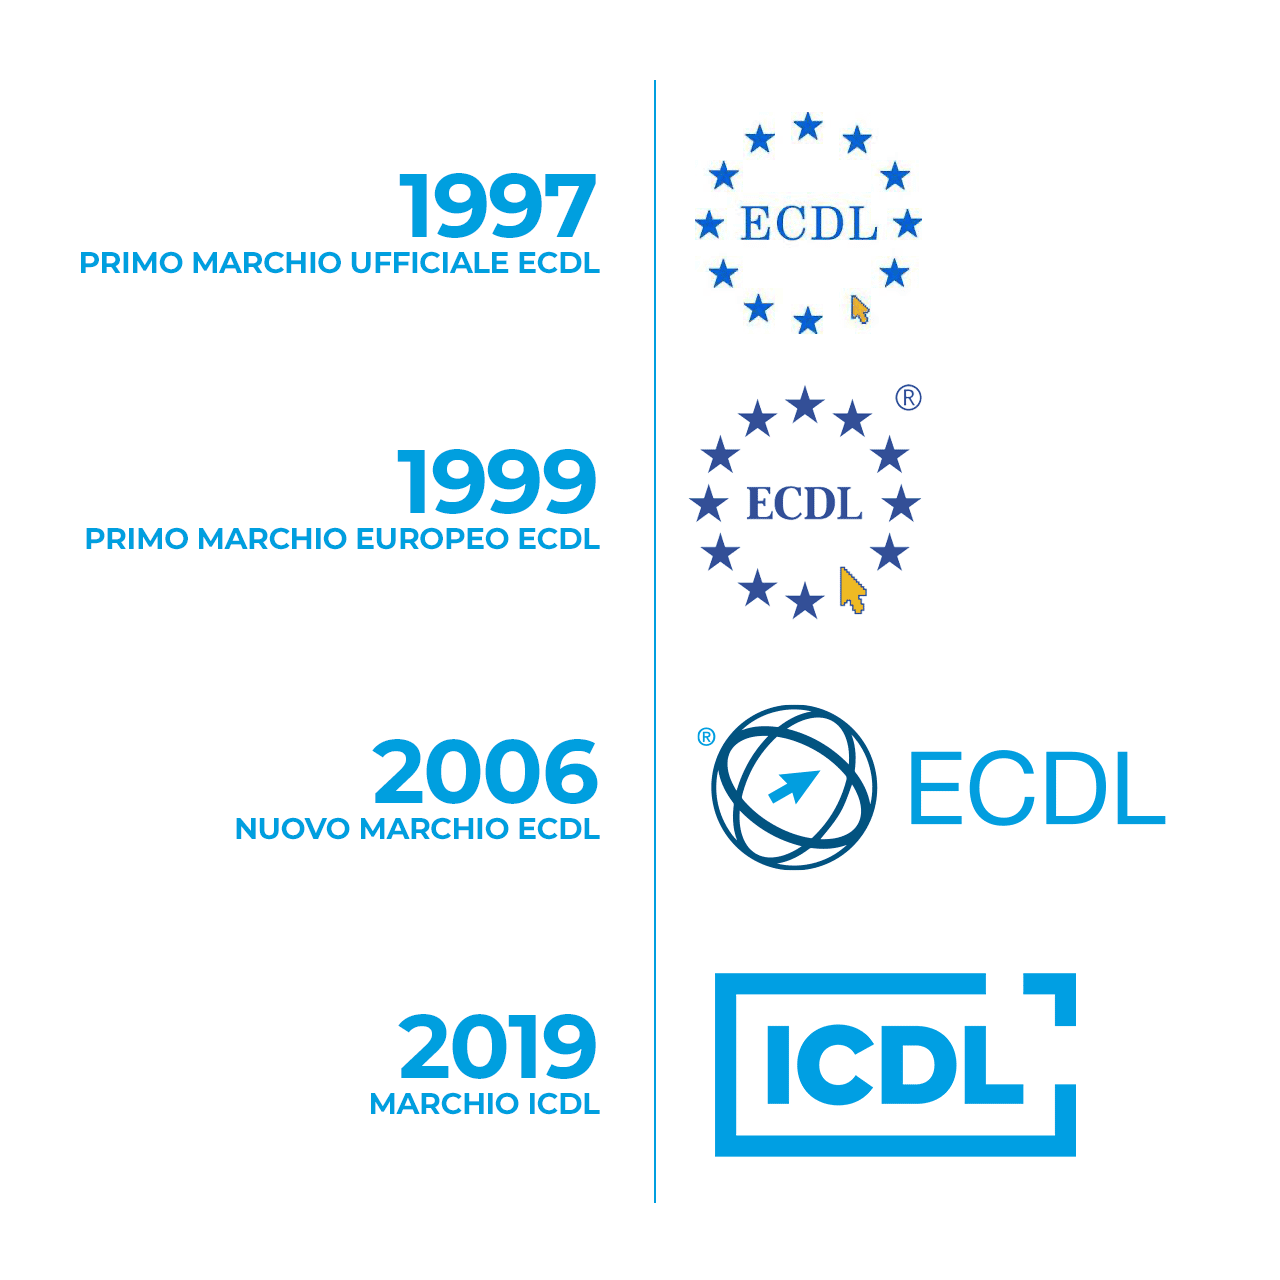 Evoluzione dei march logo ECDL-ICDL